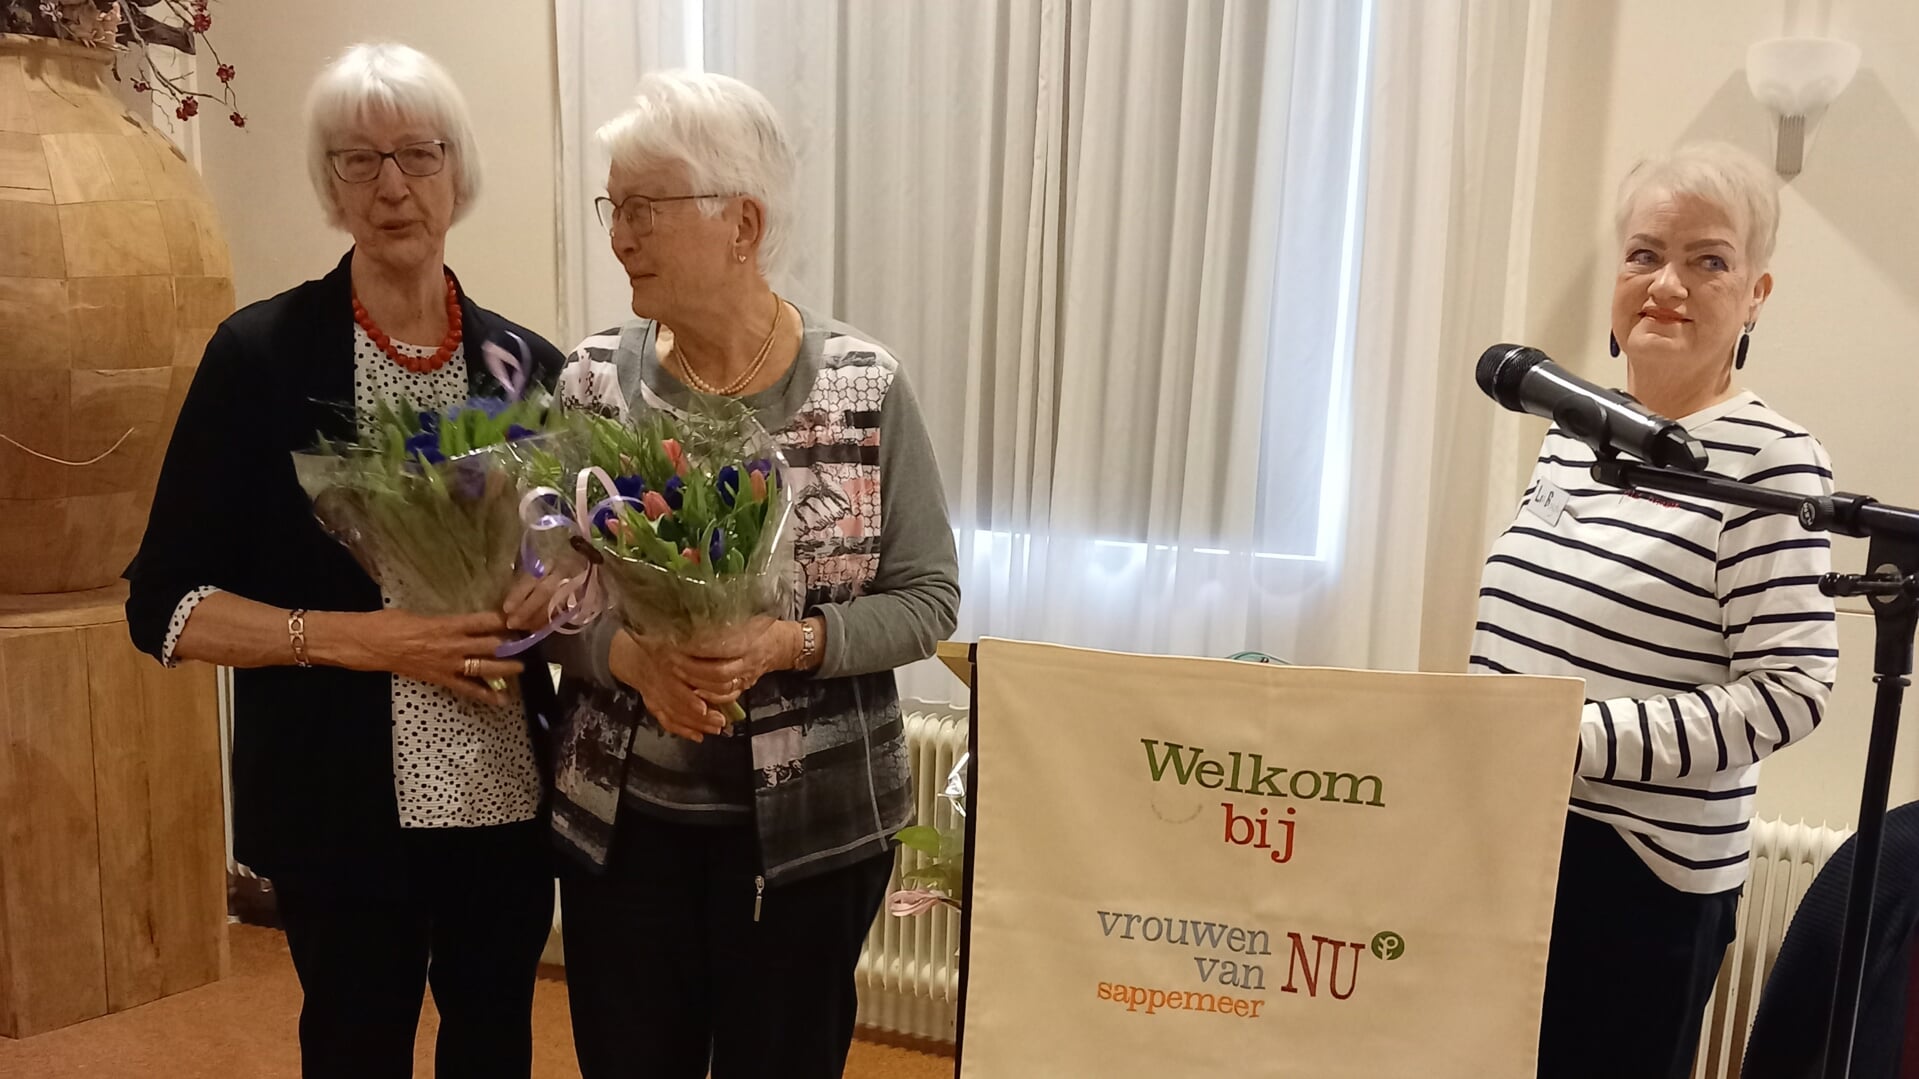 De dames Luiken en Leinenga werden gehuldigd omdat ze al 45 jaar lid zijn van Vrouwen van Nu.